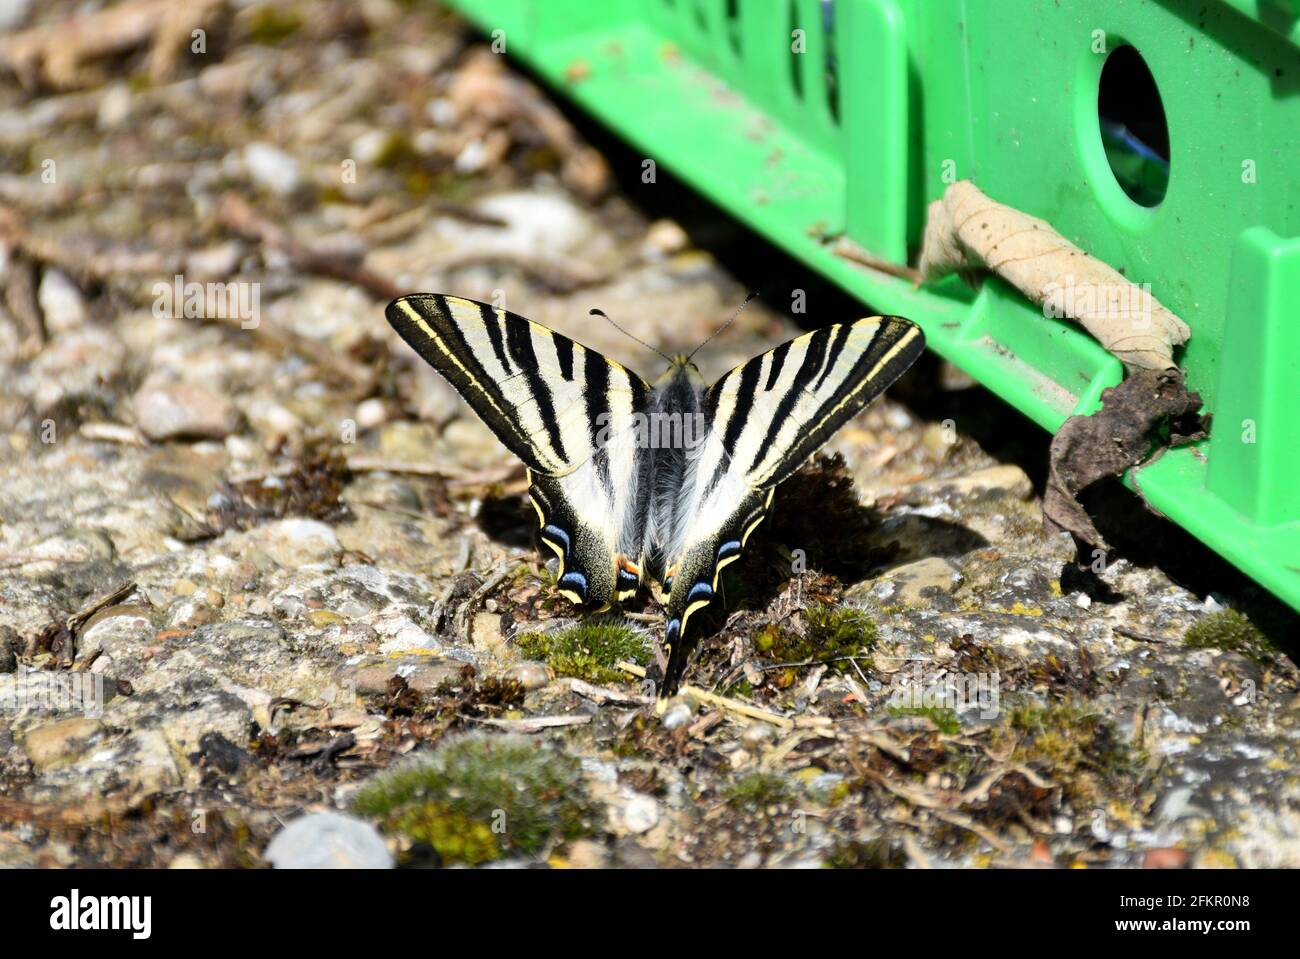 Papillon Iphiclides Podalirius. Il s'agit d'une espèce de lépidoptera ditrisio de la famille des Papilionidae largement distribuée dans toute la région paléoarctique Banque D'Images